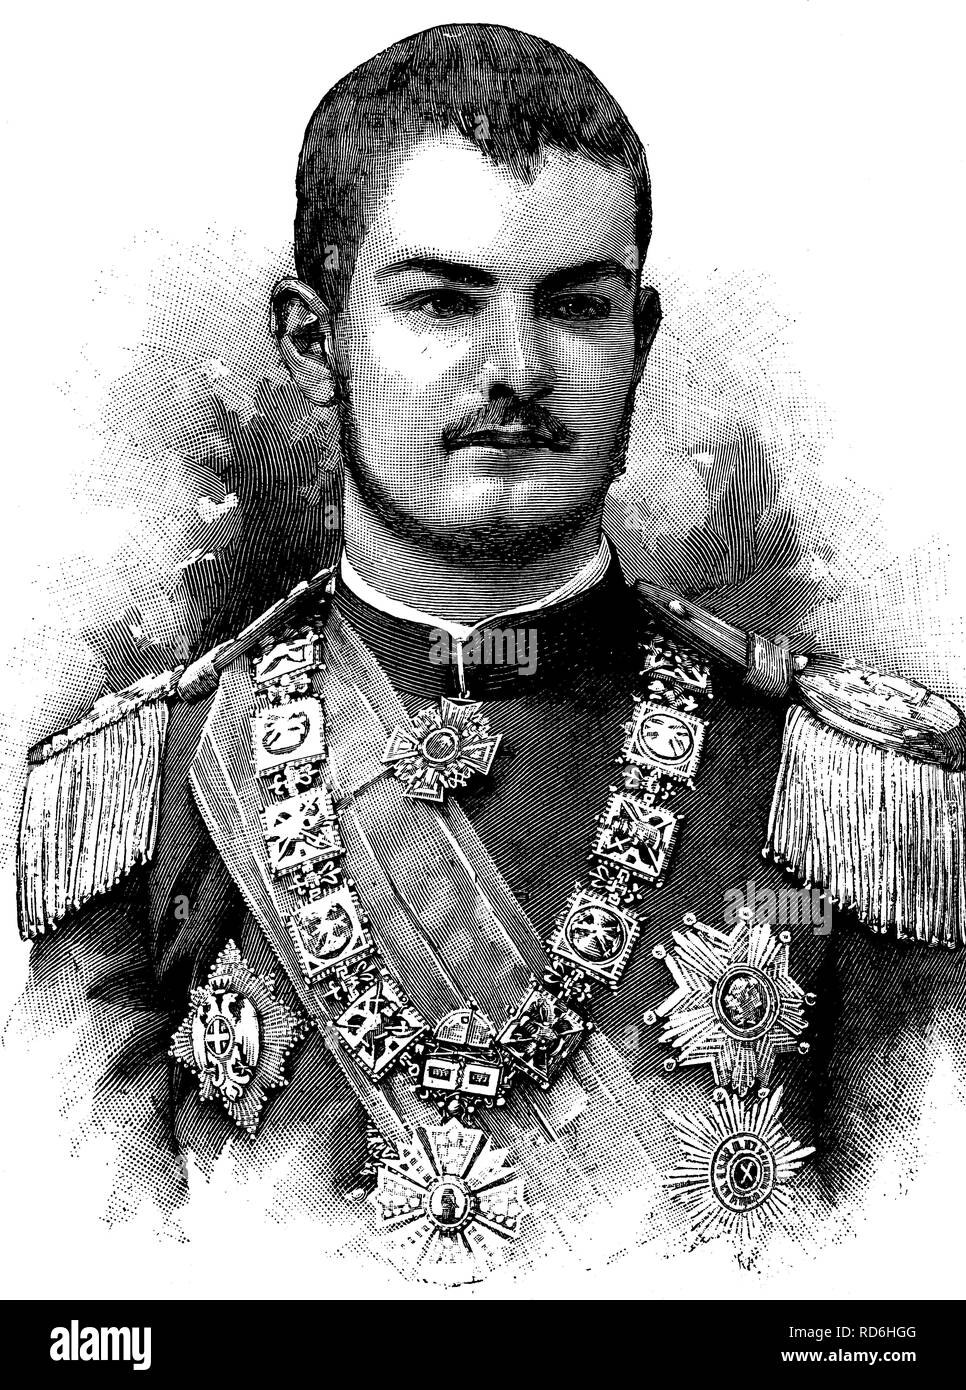 Alexander I, König von Serbien, Aleksandar Obrenović, 1876 - 1903, historische Abbildung ca. 1893 Stockfoto